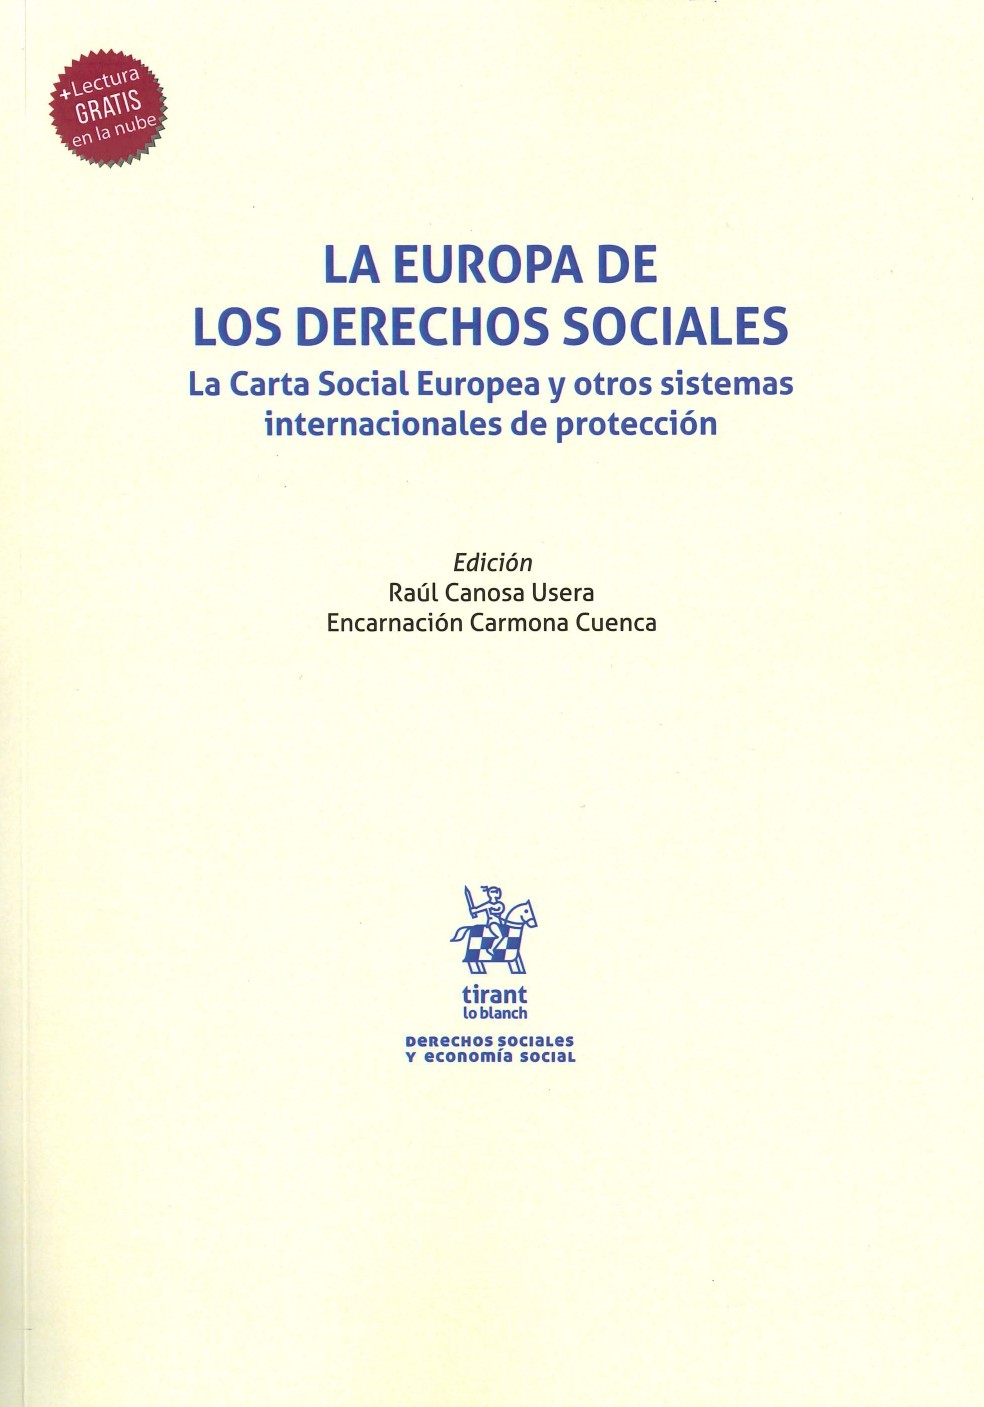 Imagen de portada del libro La Europa de los derechos sociales